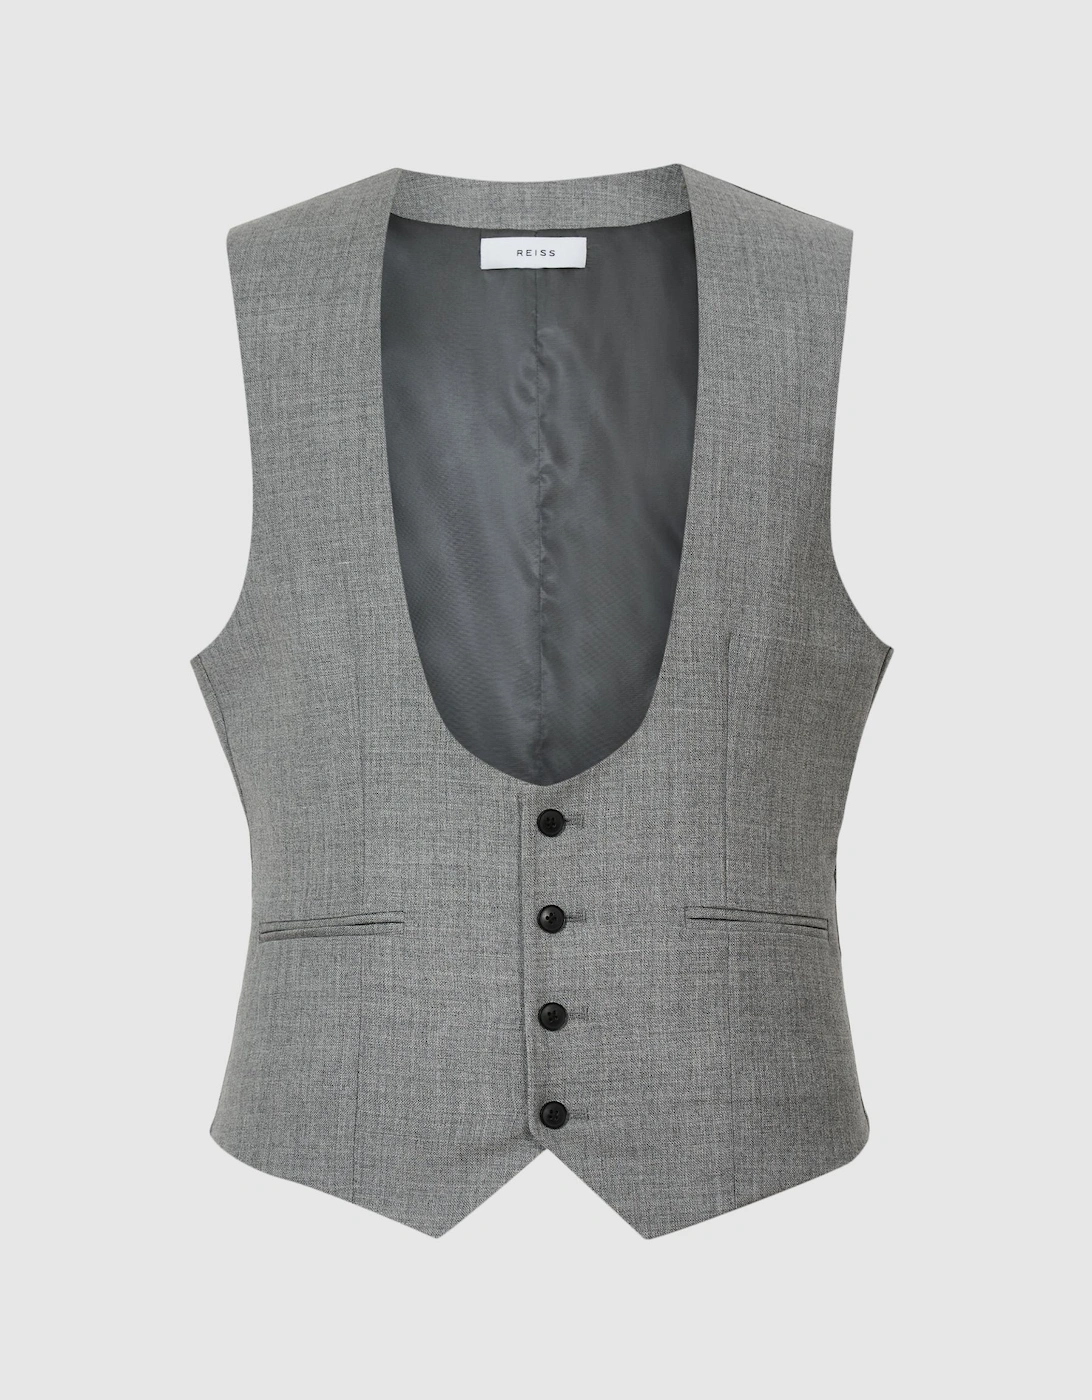 Wool Wedding Suit: Horseshoe Waistcoat, 2 of 1